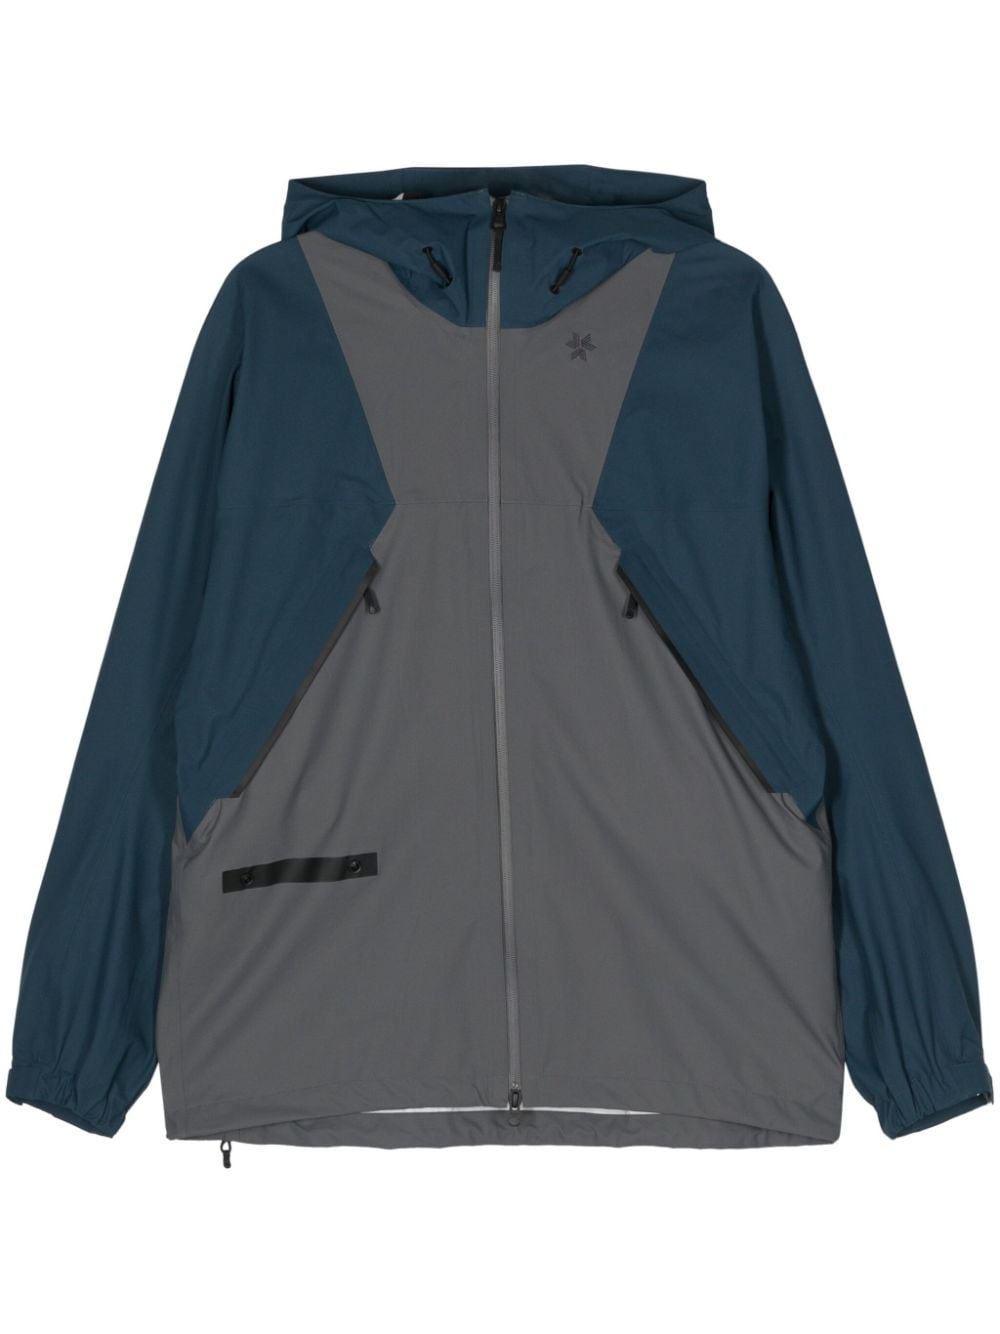 Pertex Shieldair Mountaineering hooded jacket